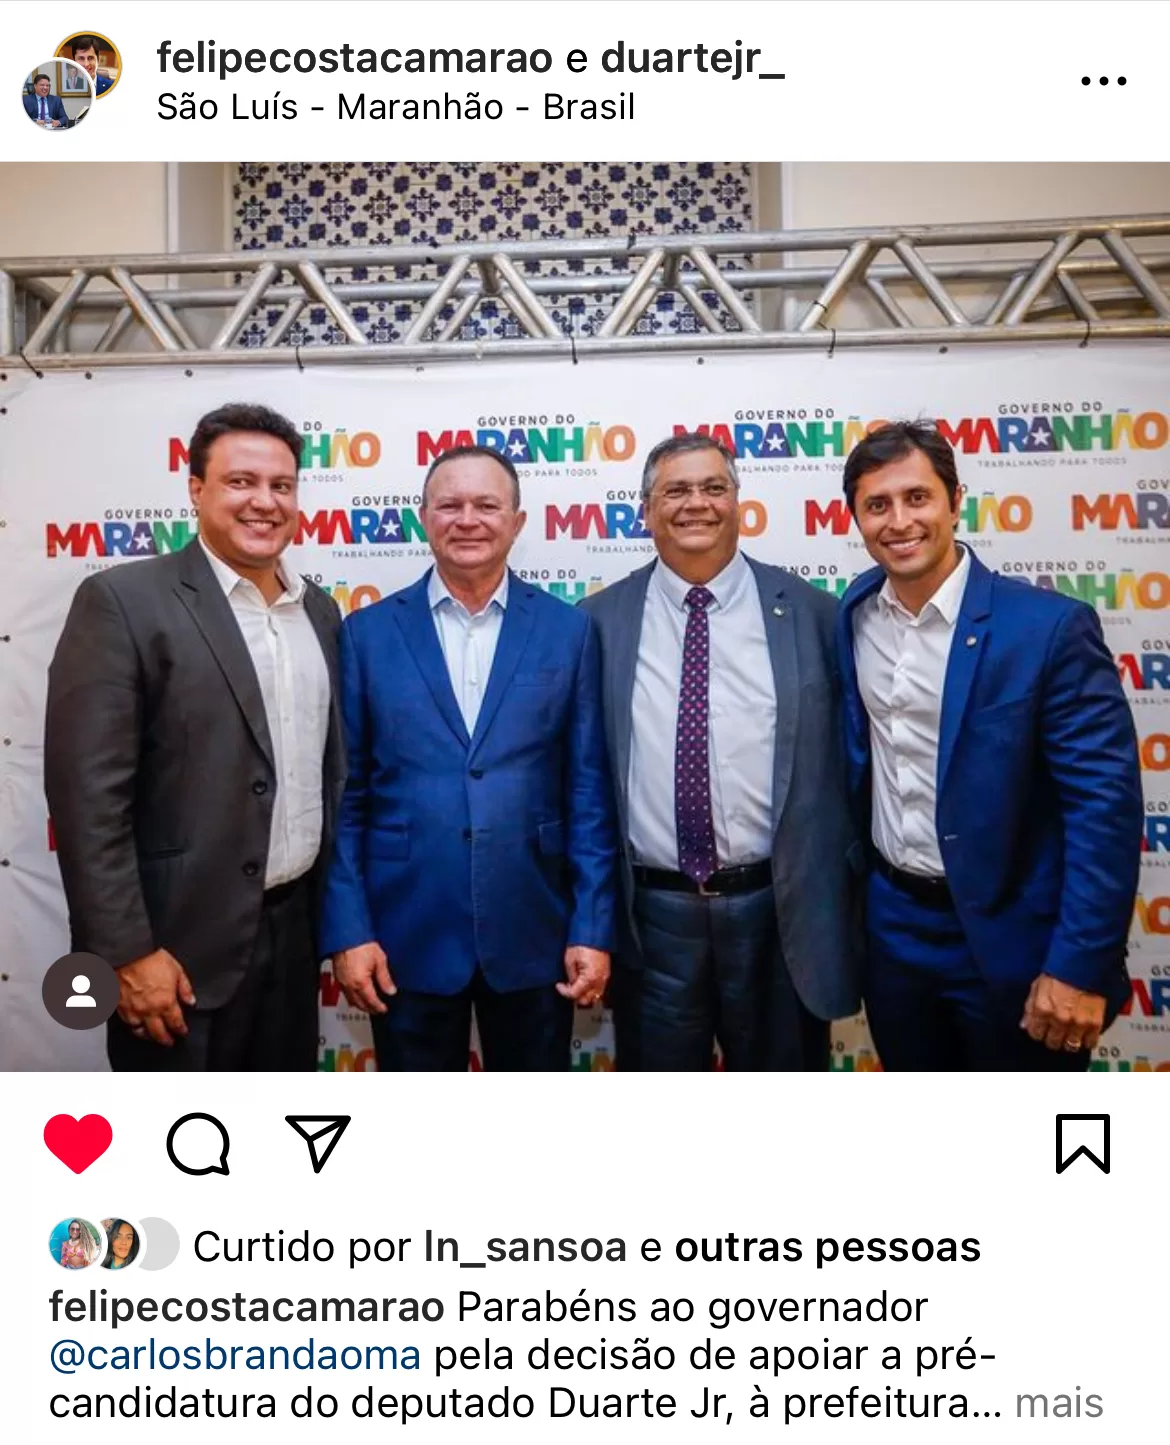 Vice-Governador Felipe Camarão anuncia apoio a Duarte Júnior para Prefeitura de São Luís